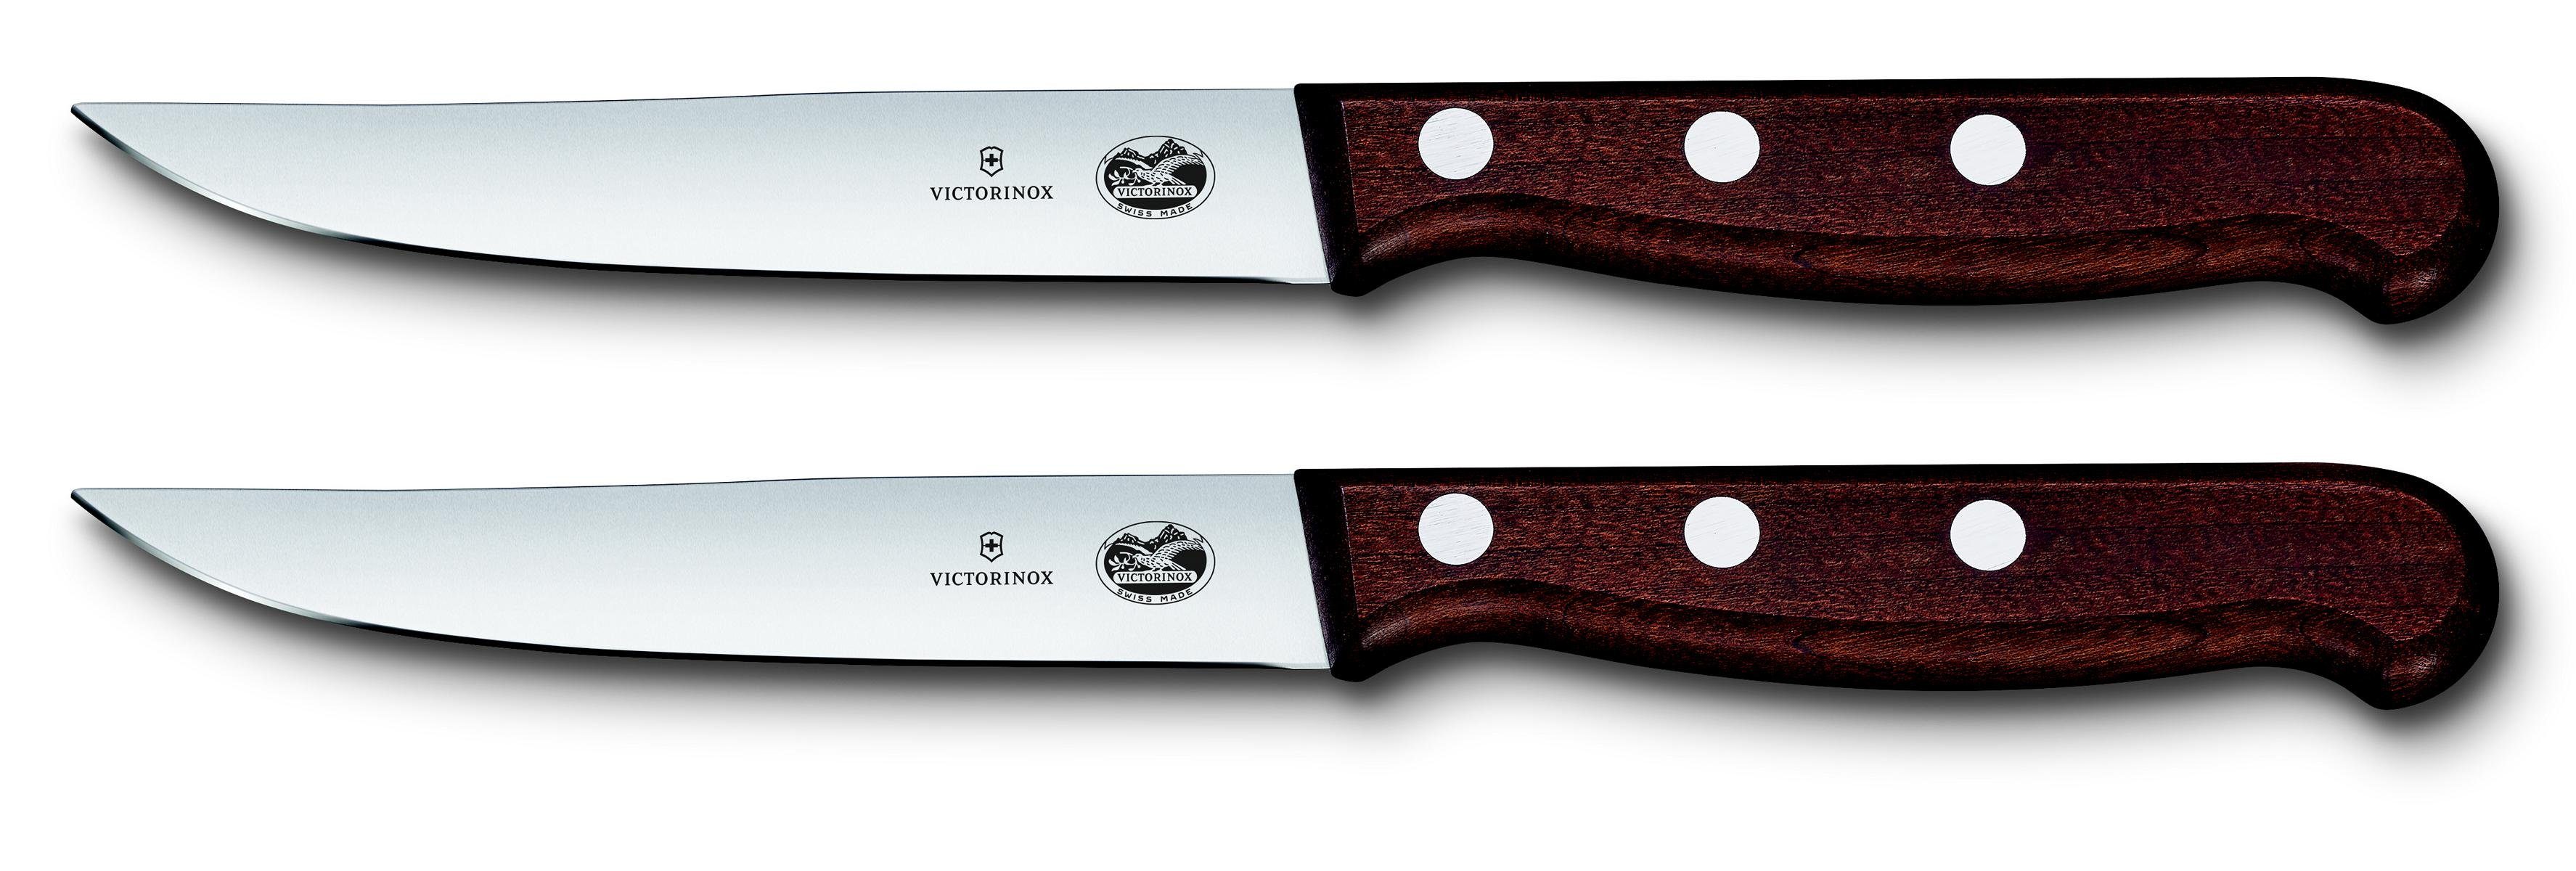 Victorinox Taschenmesser Steakmesser-Set, mod Schliff,12 cm,2-teilig,Gesch. Ahornholz, ger